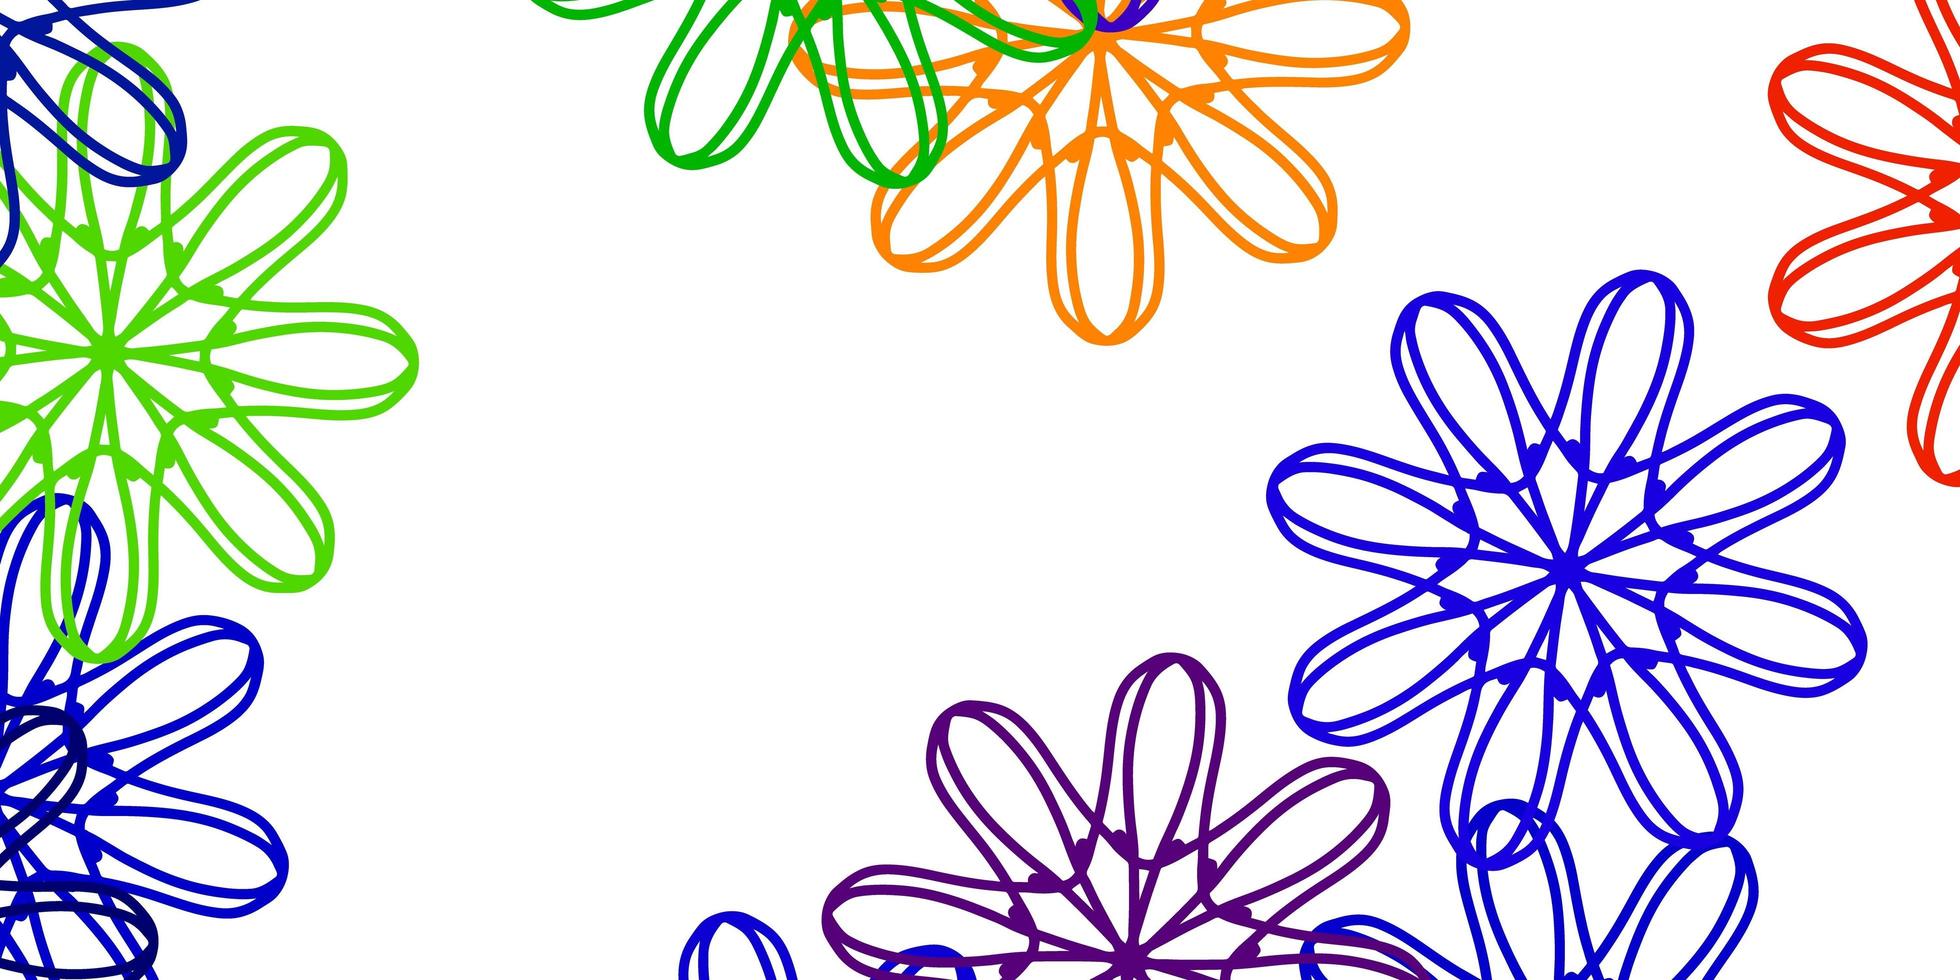 Licht mehrfarbige Vektor natürliche Grafik mit Blumen.